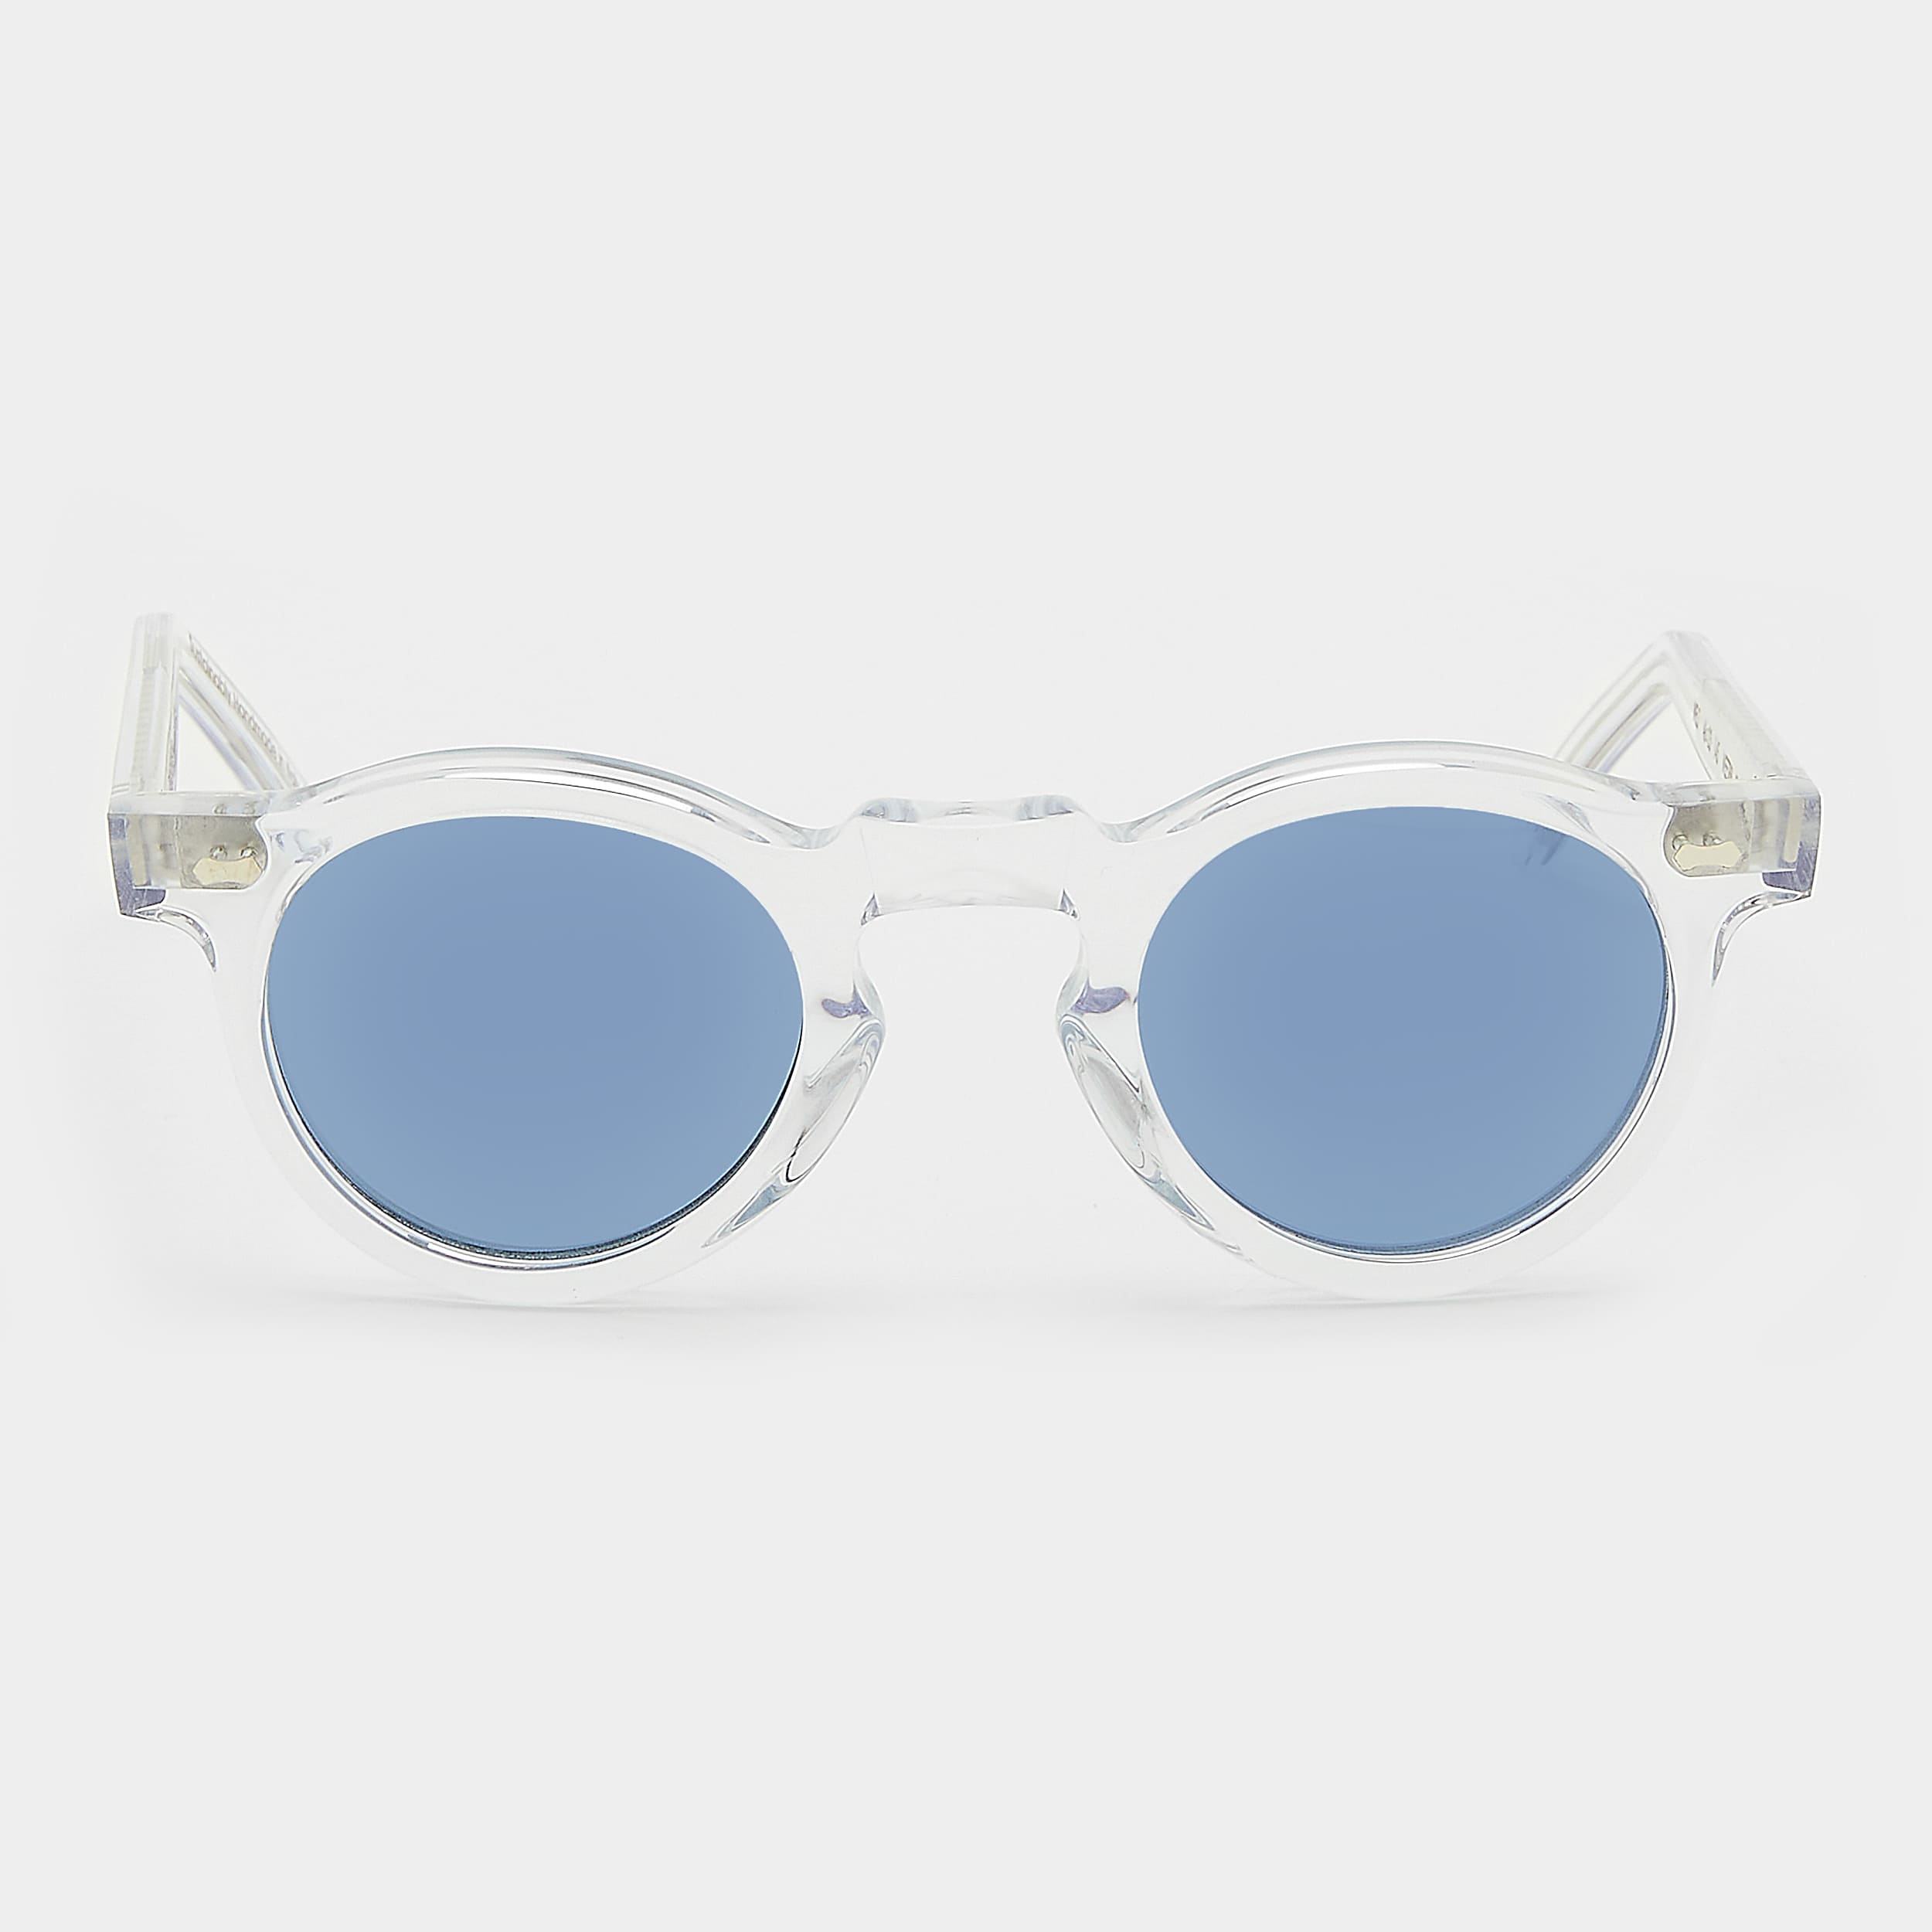 sunglasses-welt-eco-transparent-blue-sustainable-tbd-eyewear-front